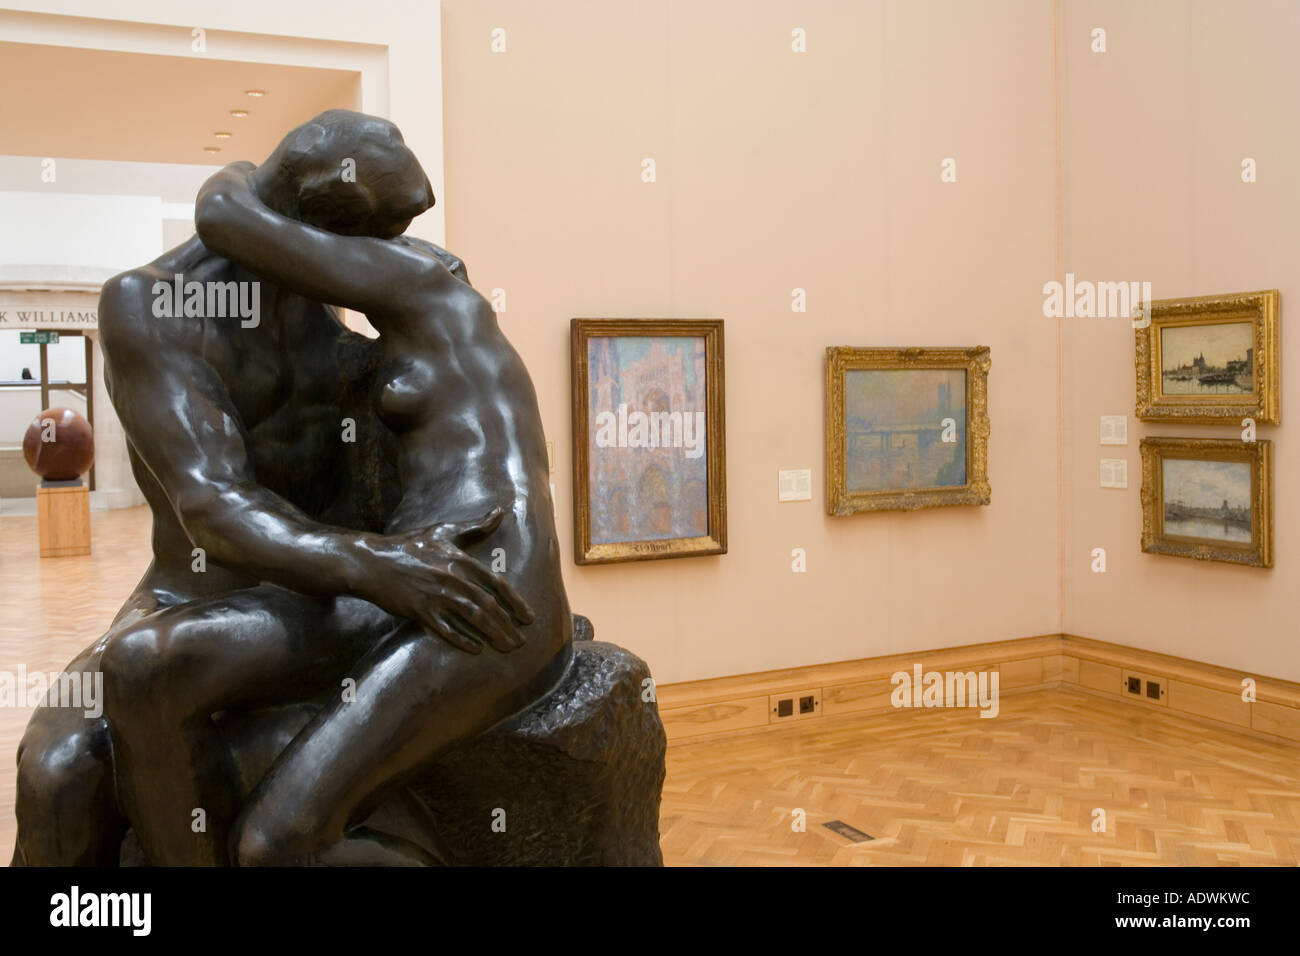 Pays de Galles Cardiff Civic Centre National Museum of Wales Rodins baiser dans la galerie d'art impressionniste Banque D'Images